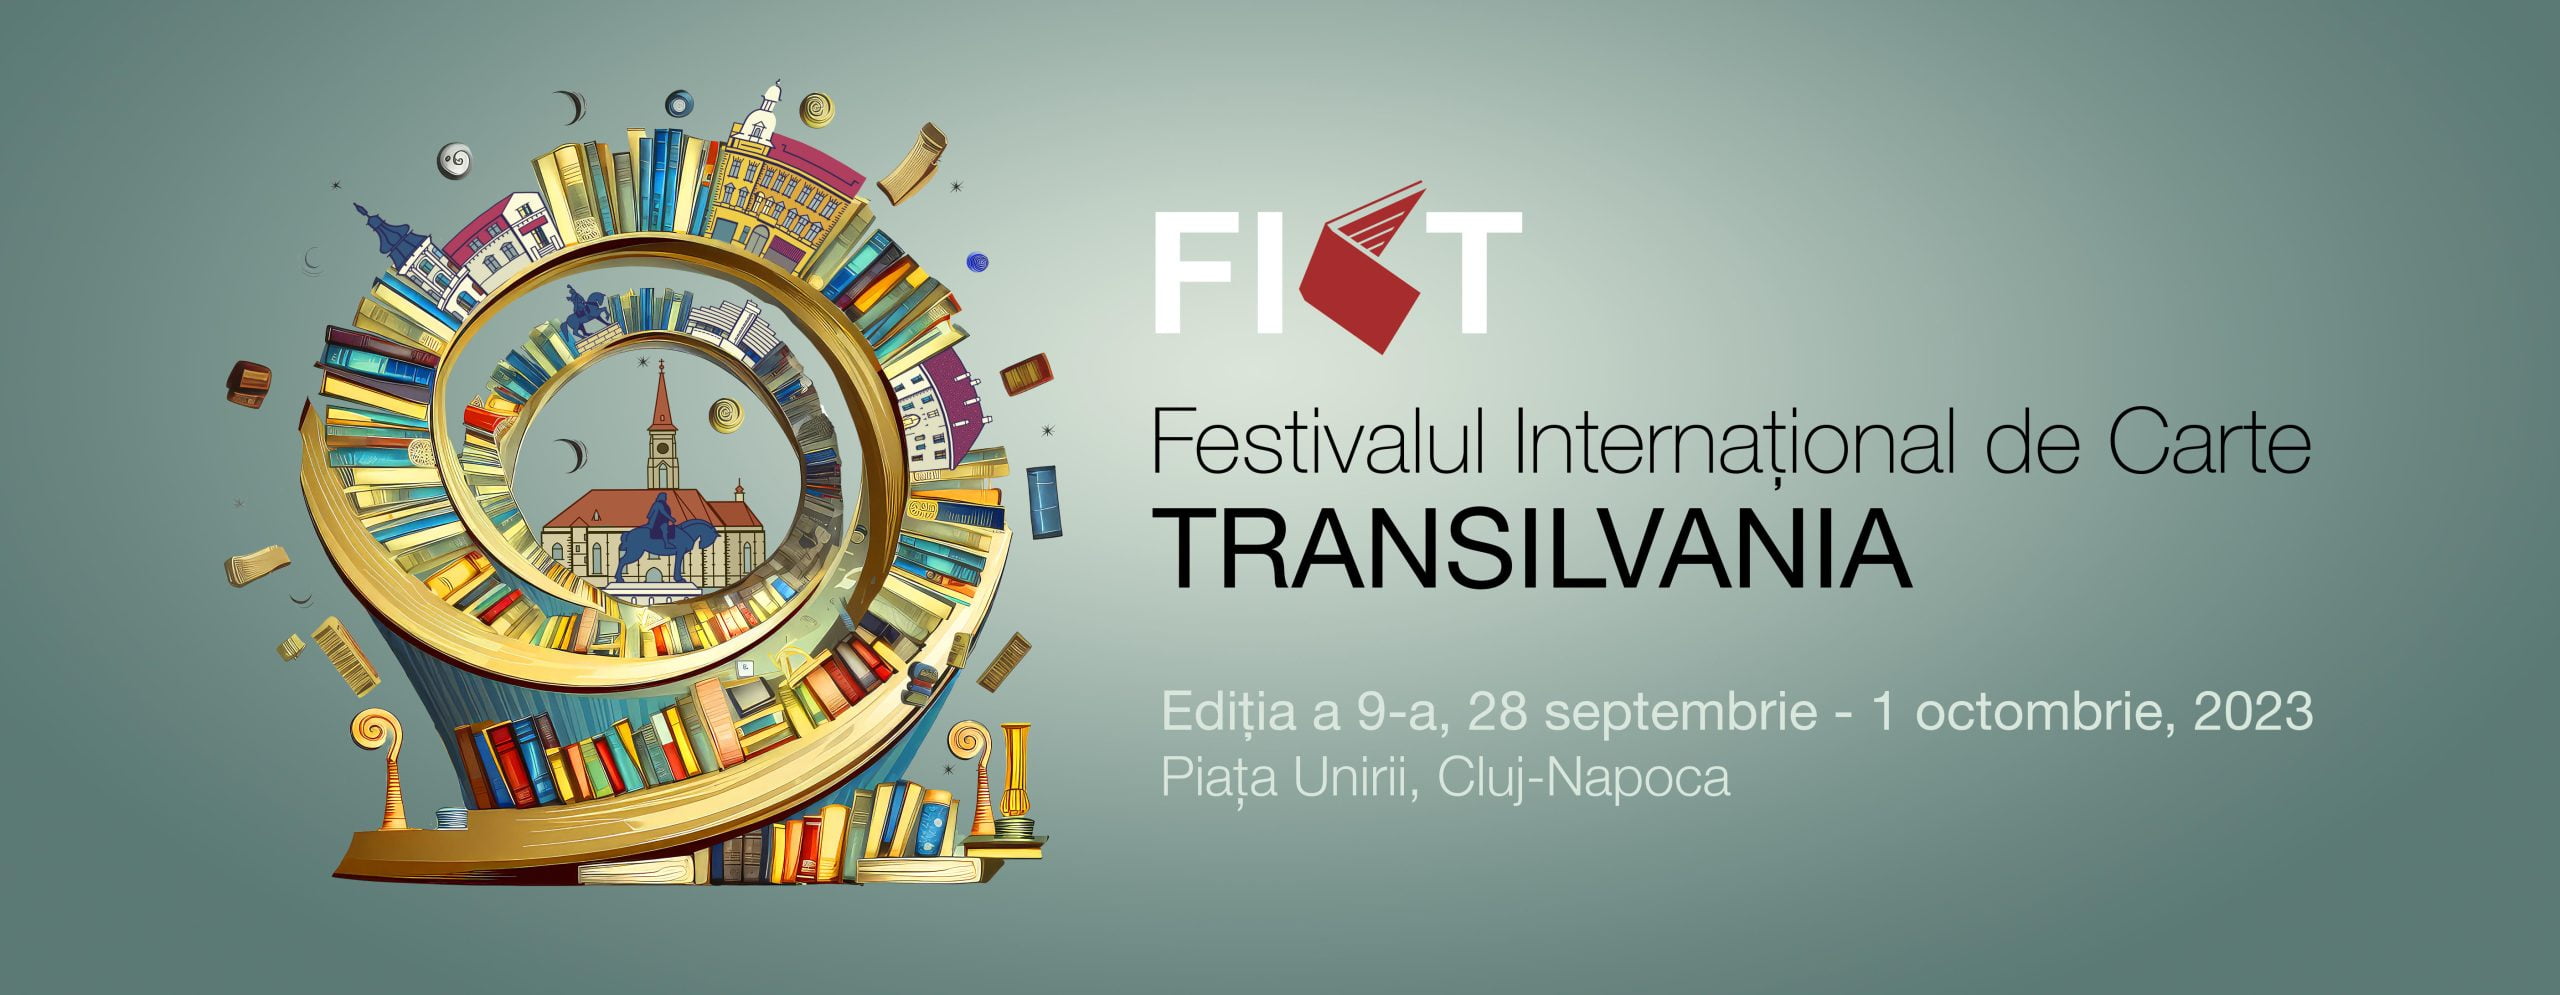 Festivalul Internațional de Carte Transilvania ajunge la cea de-a IX-a ediție